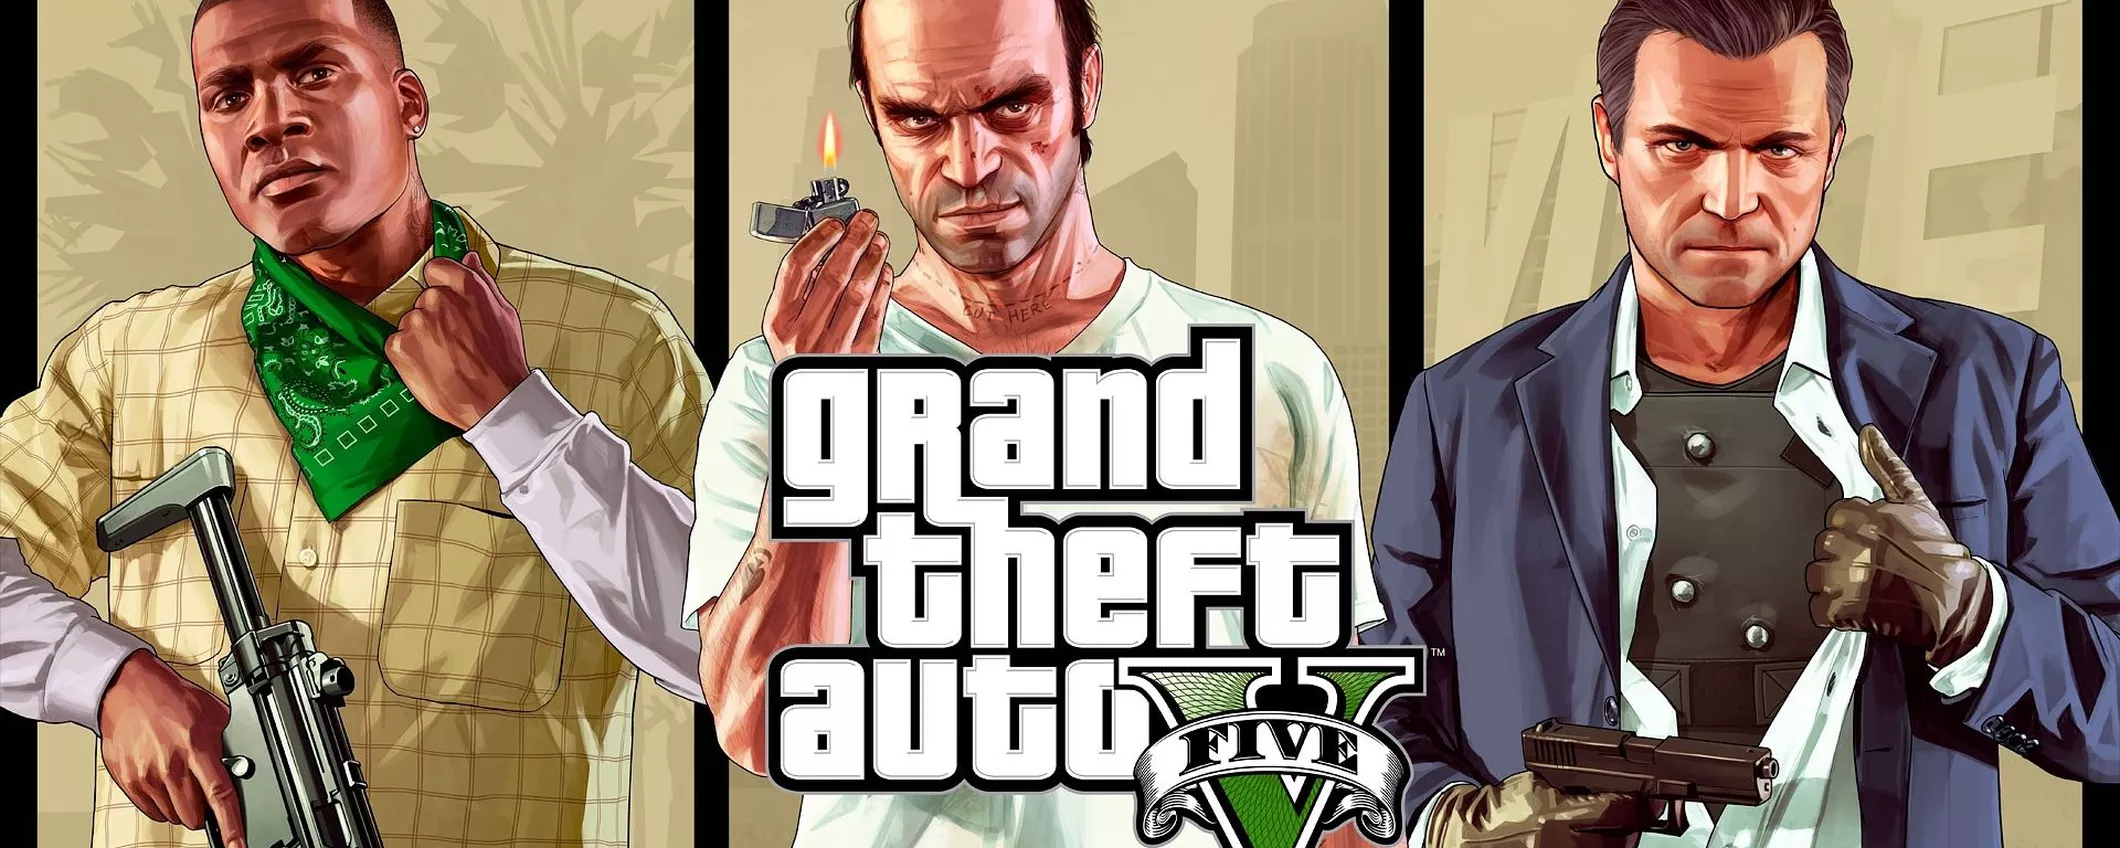 Grand Theft Auto V (GTA V), offerta IRRINUNCIABILE su Amazon in attesa di GTA VI (26€)